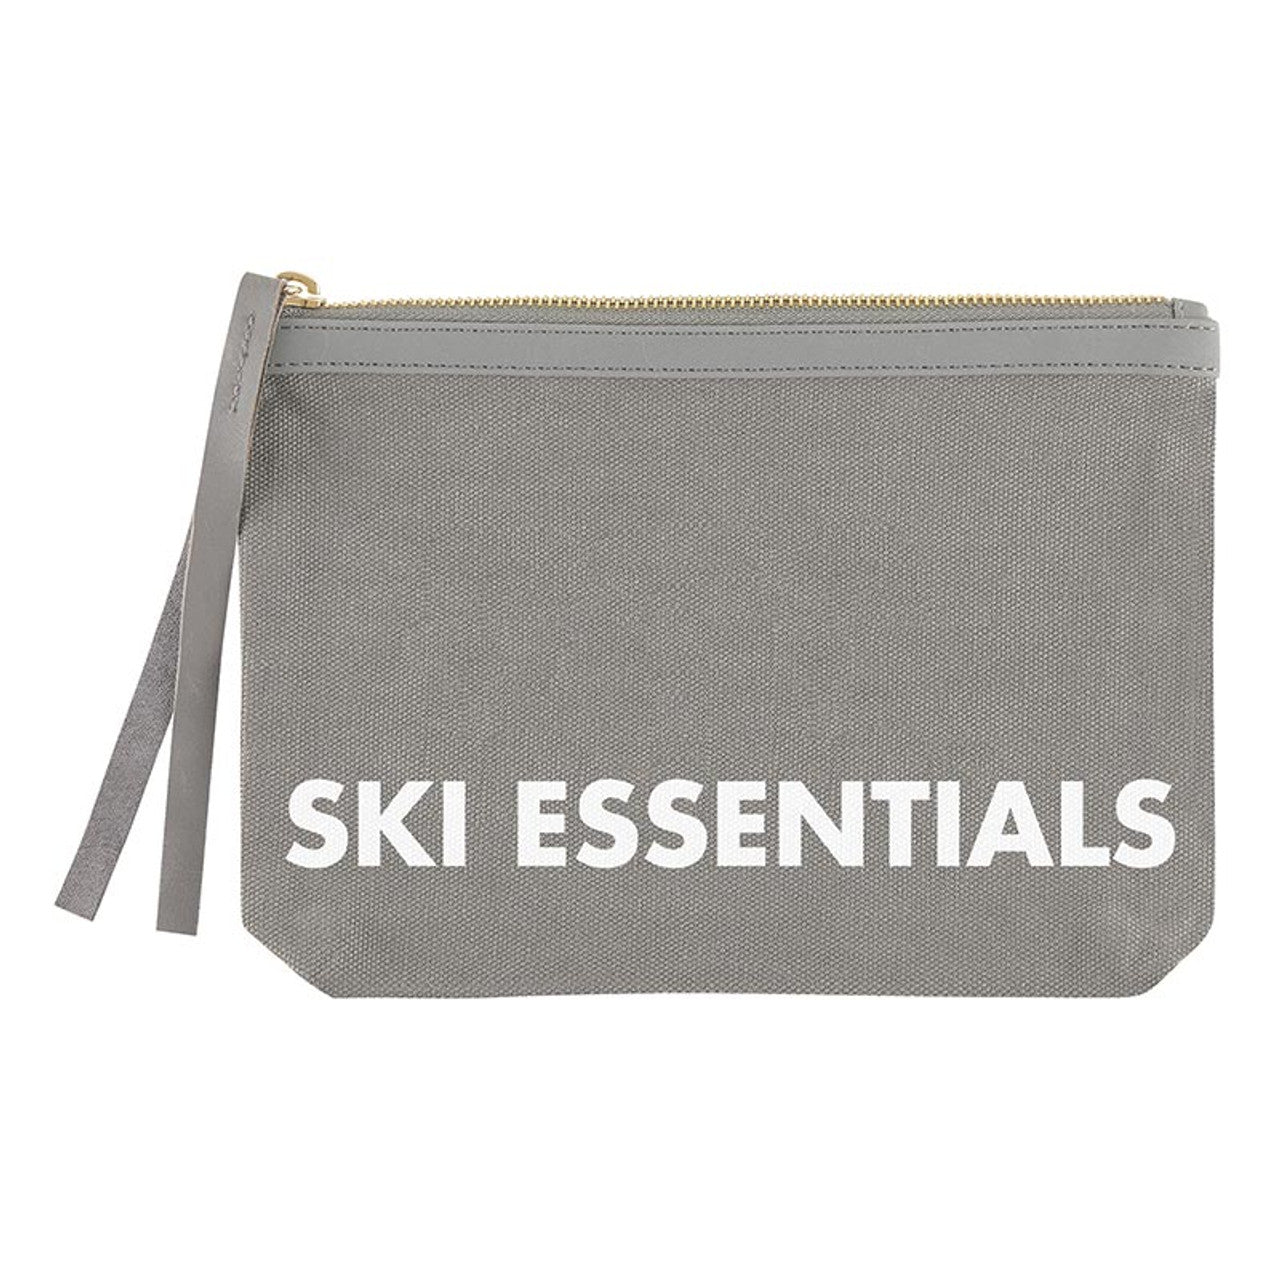 Ski Essentials Canvas Pouch